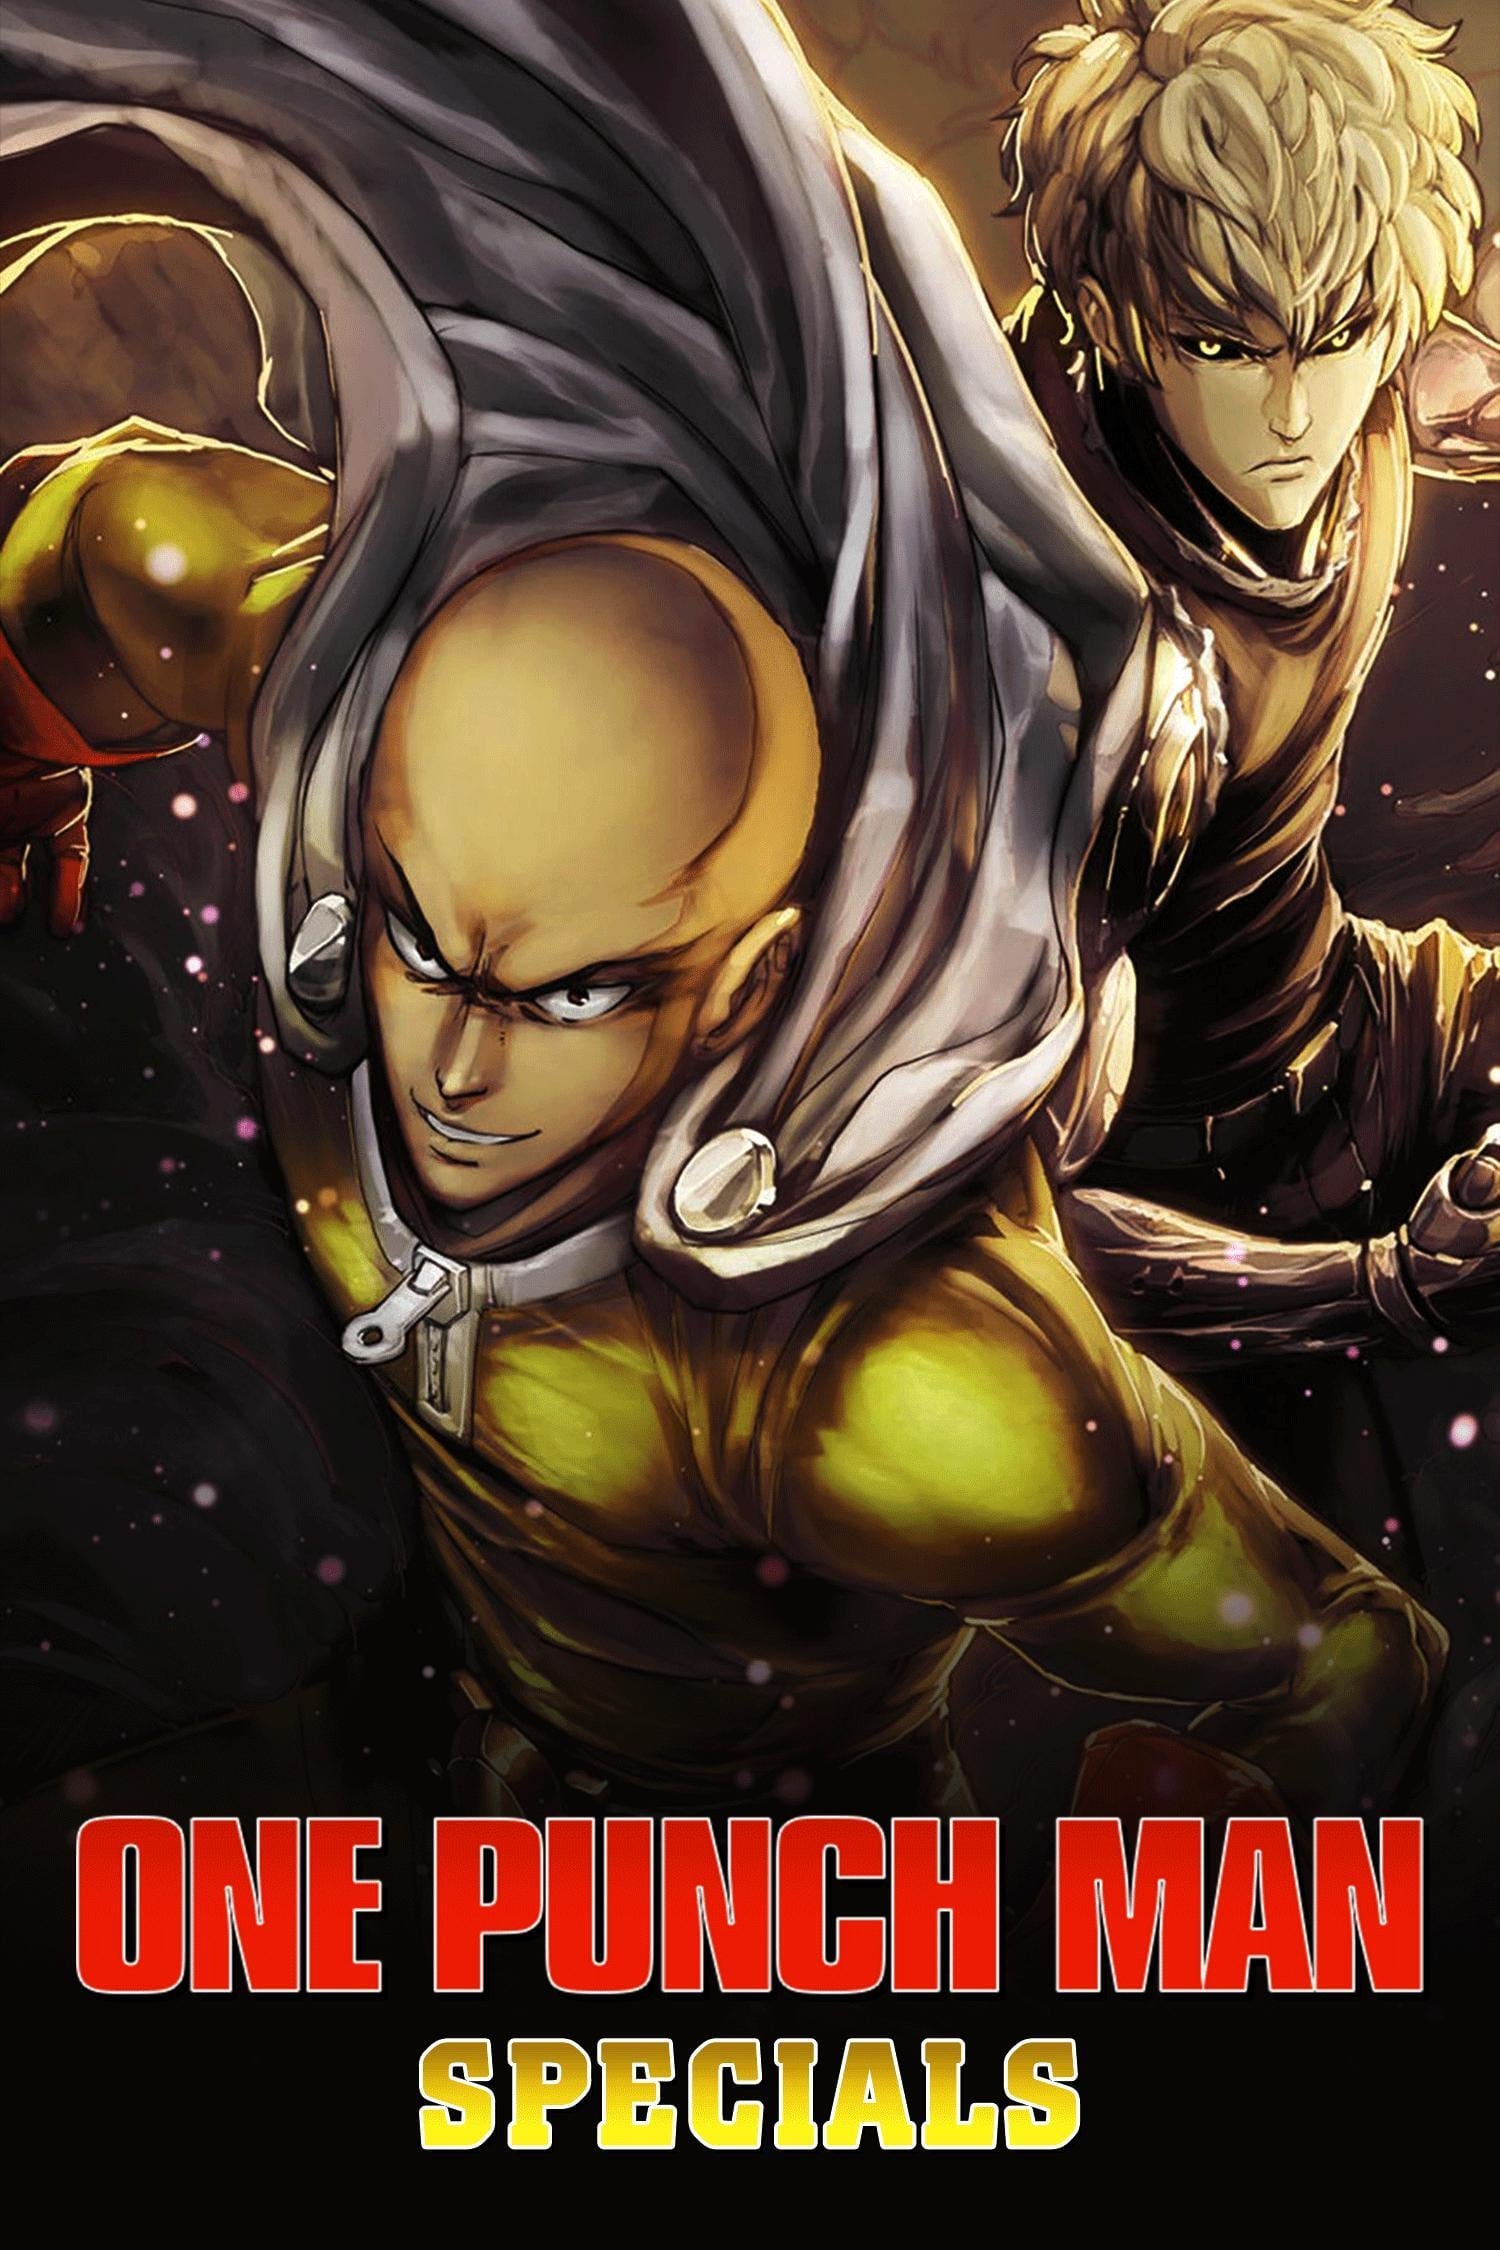 Watch One-Punch Man · Season 1 Full Episodes Online - Plex